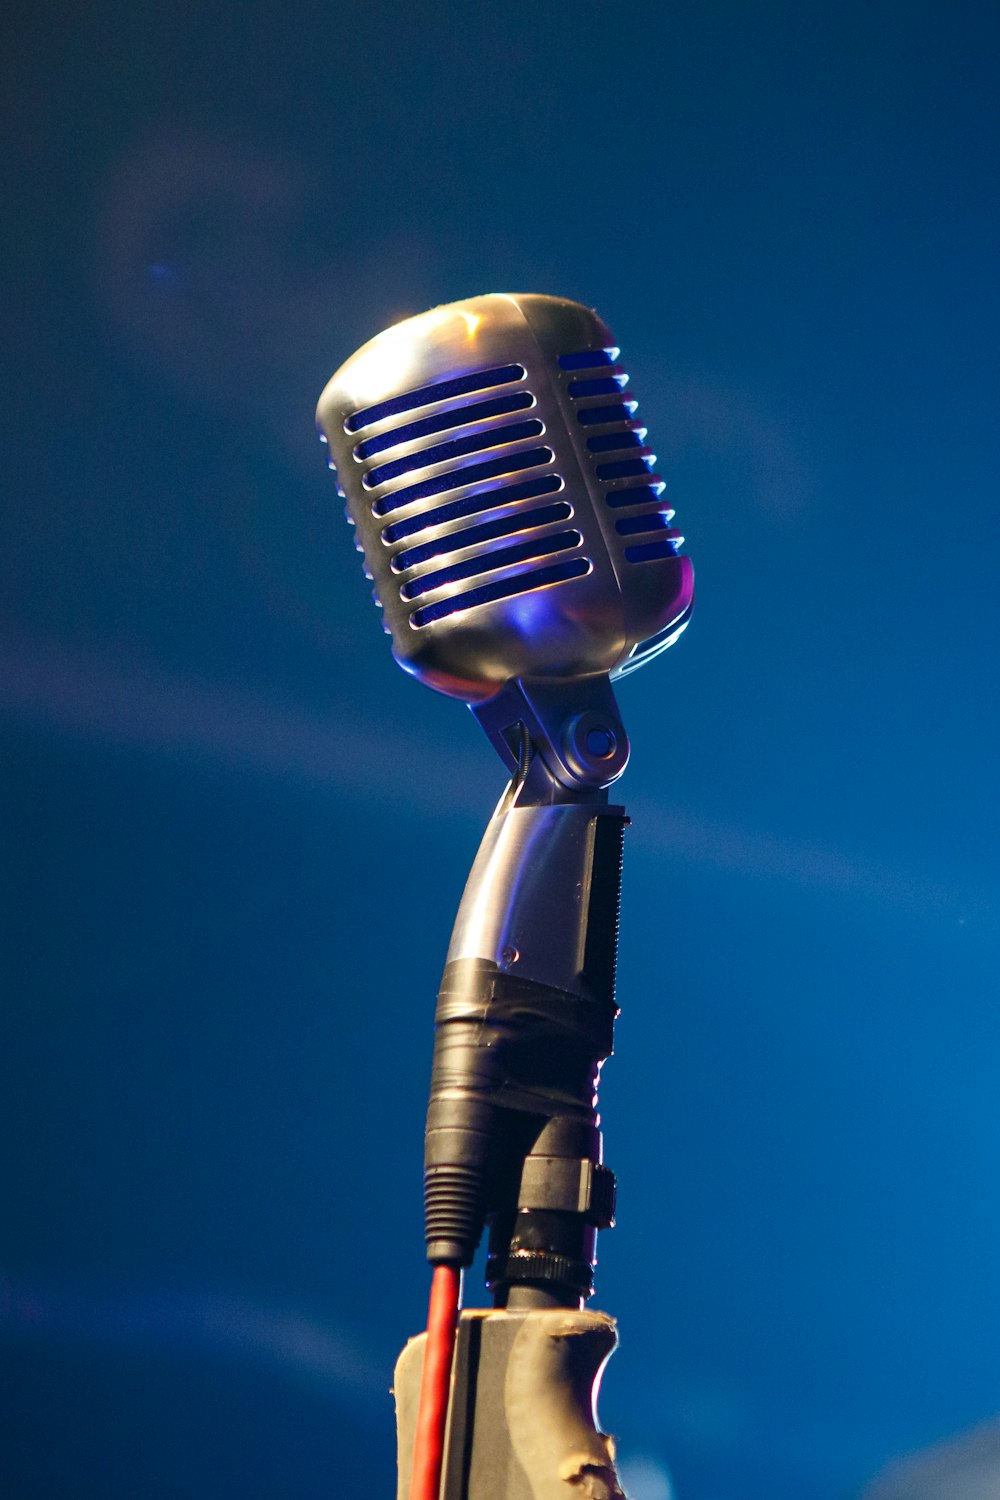 microfone preto no fundo azul